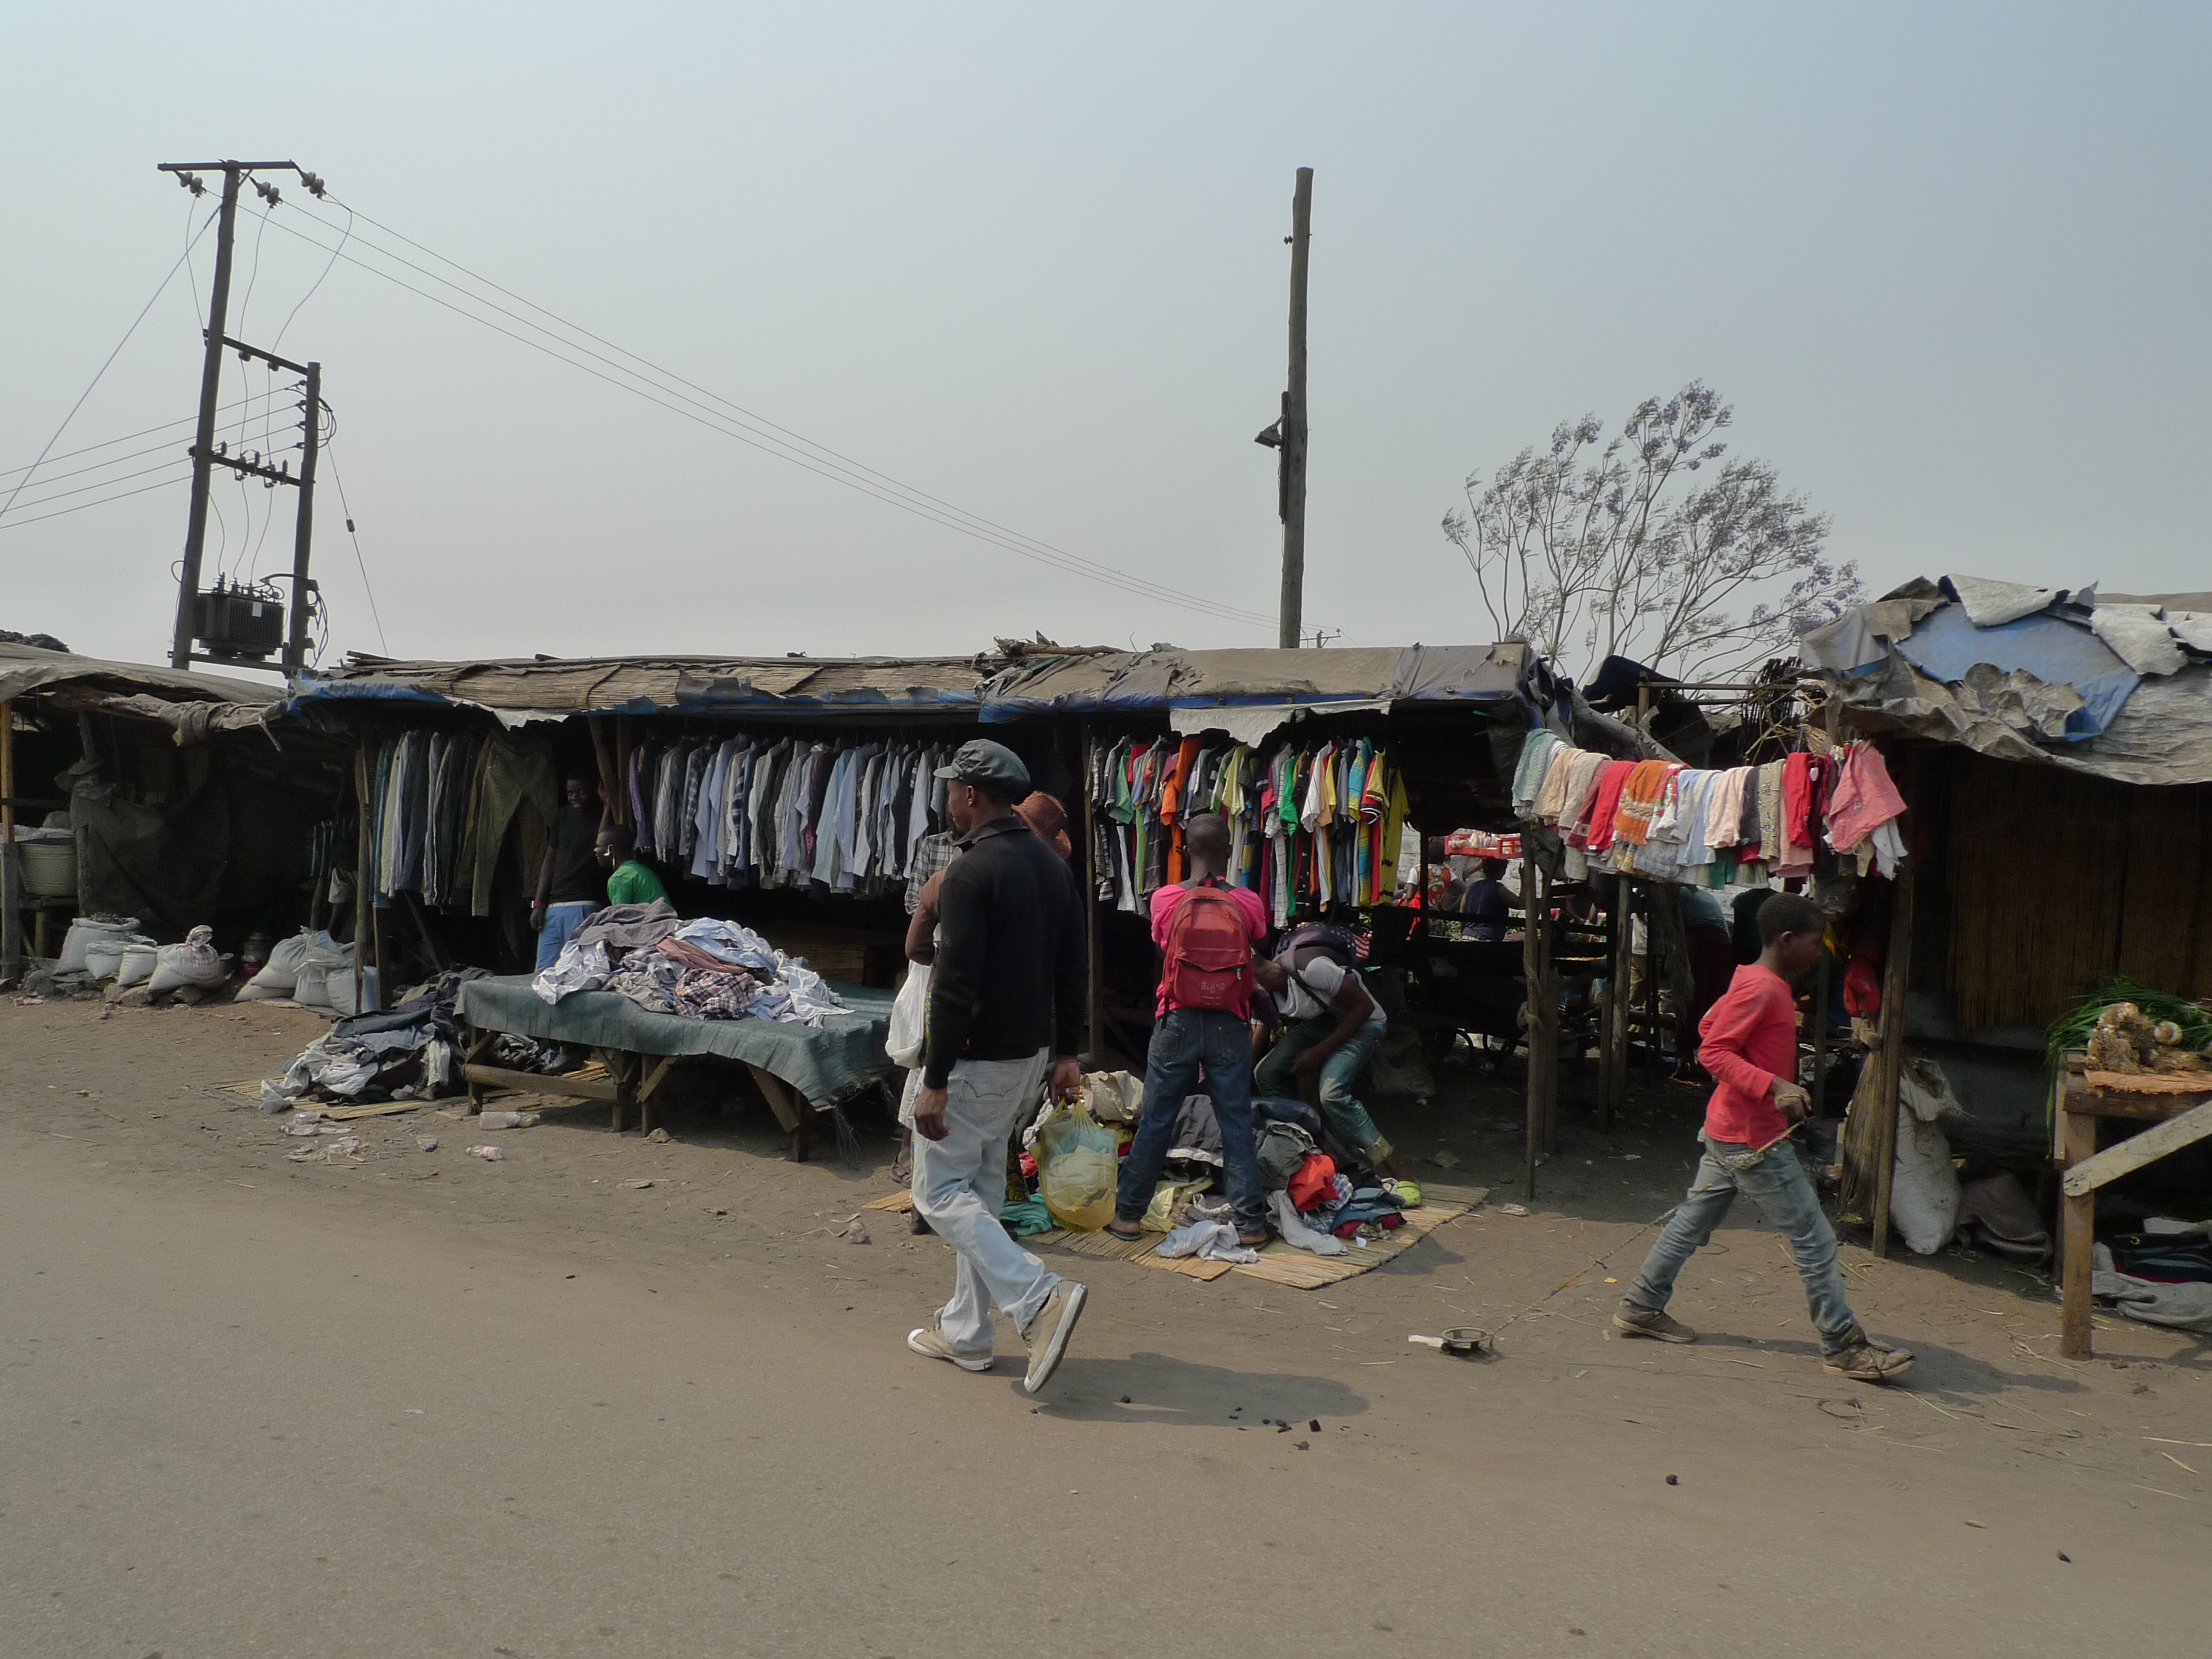 Lots of informal self-employment: market in Lusaka.